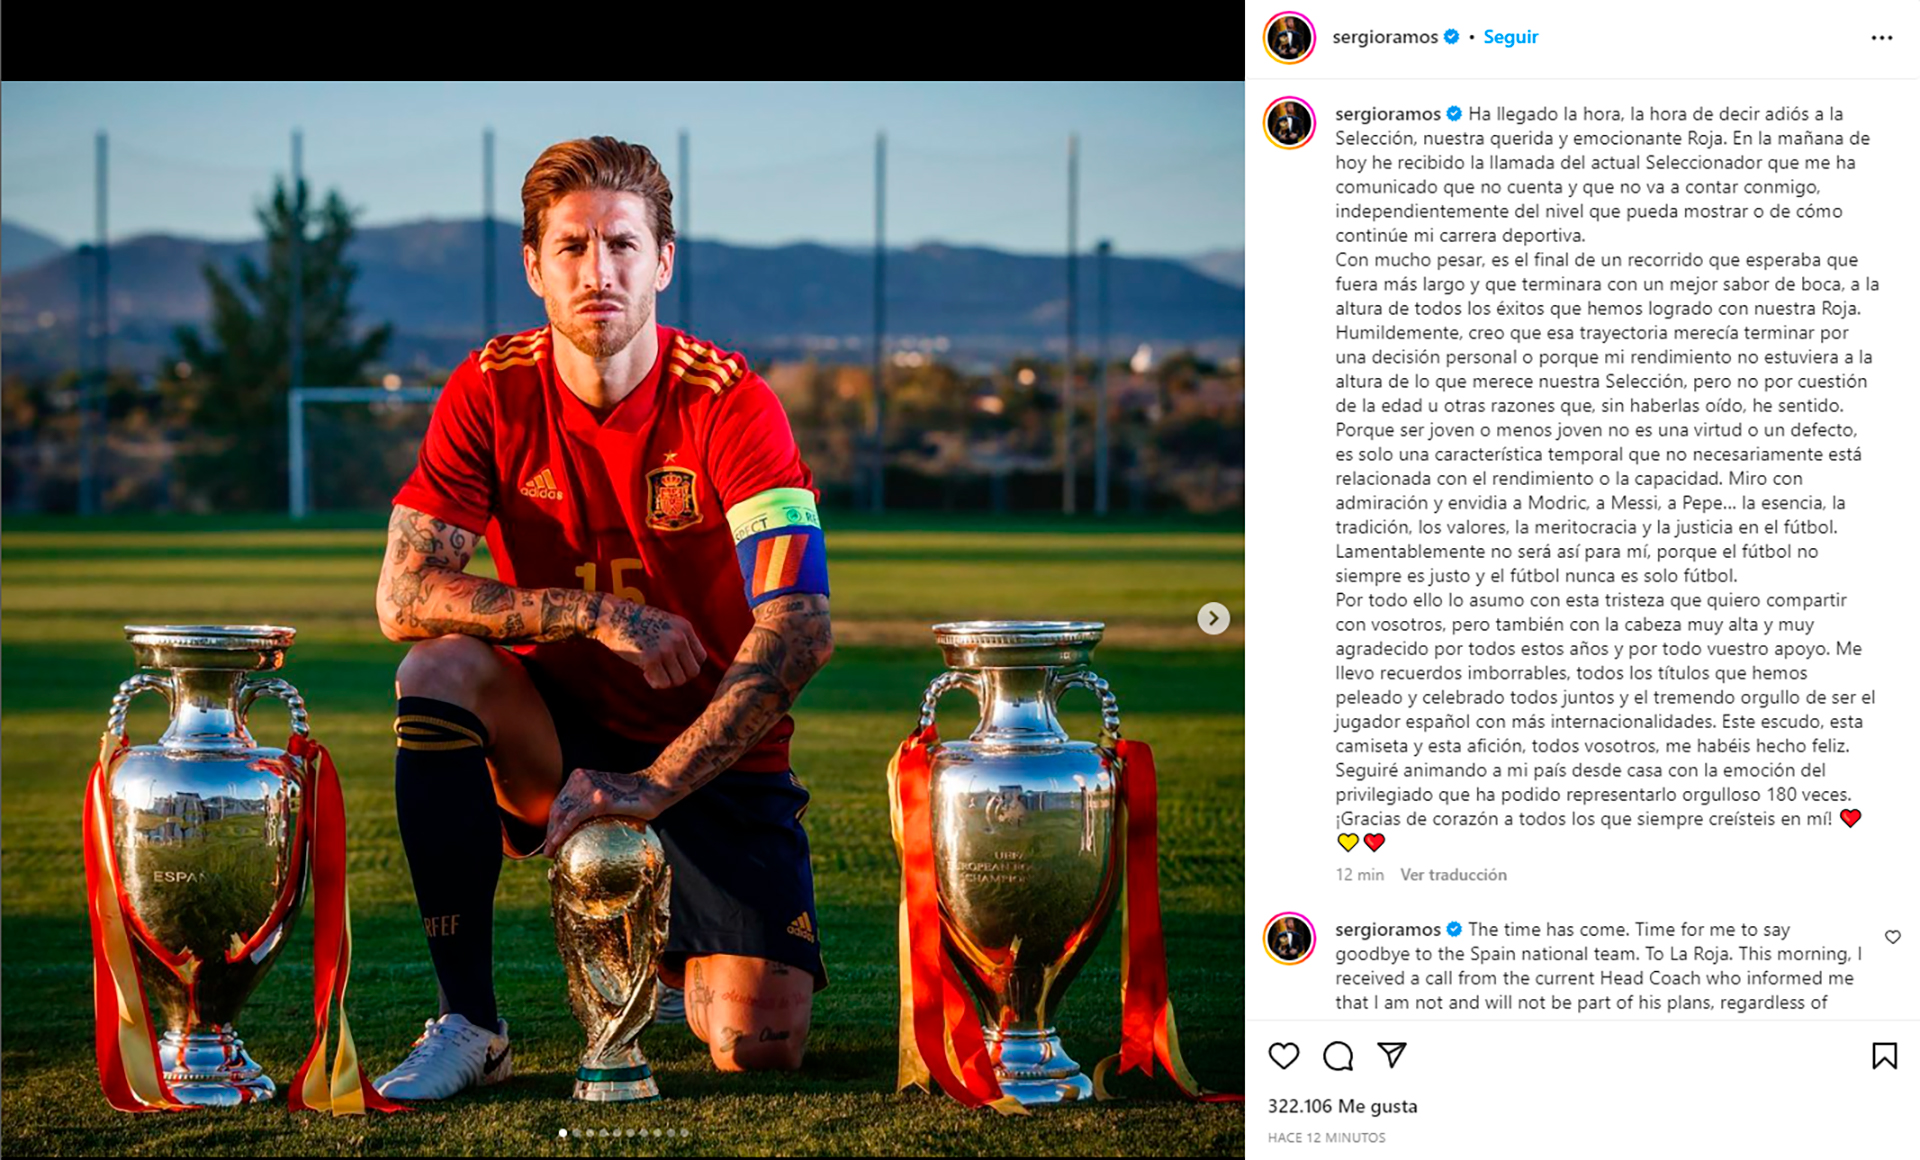 El mensaje de Sergio Ramos para anunciar su alejamiento de la selección española